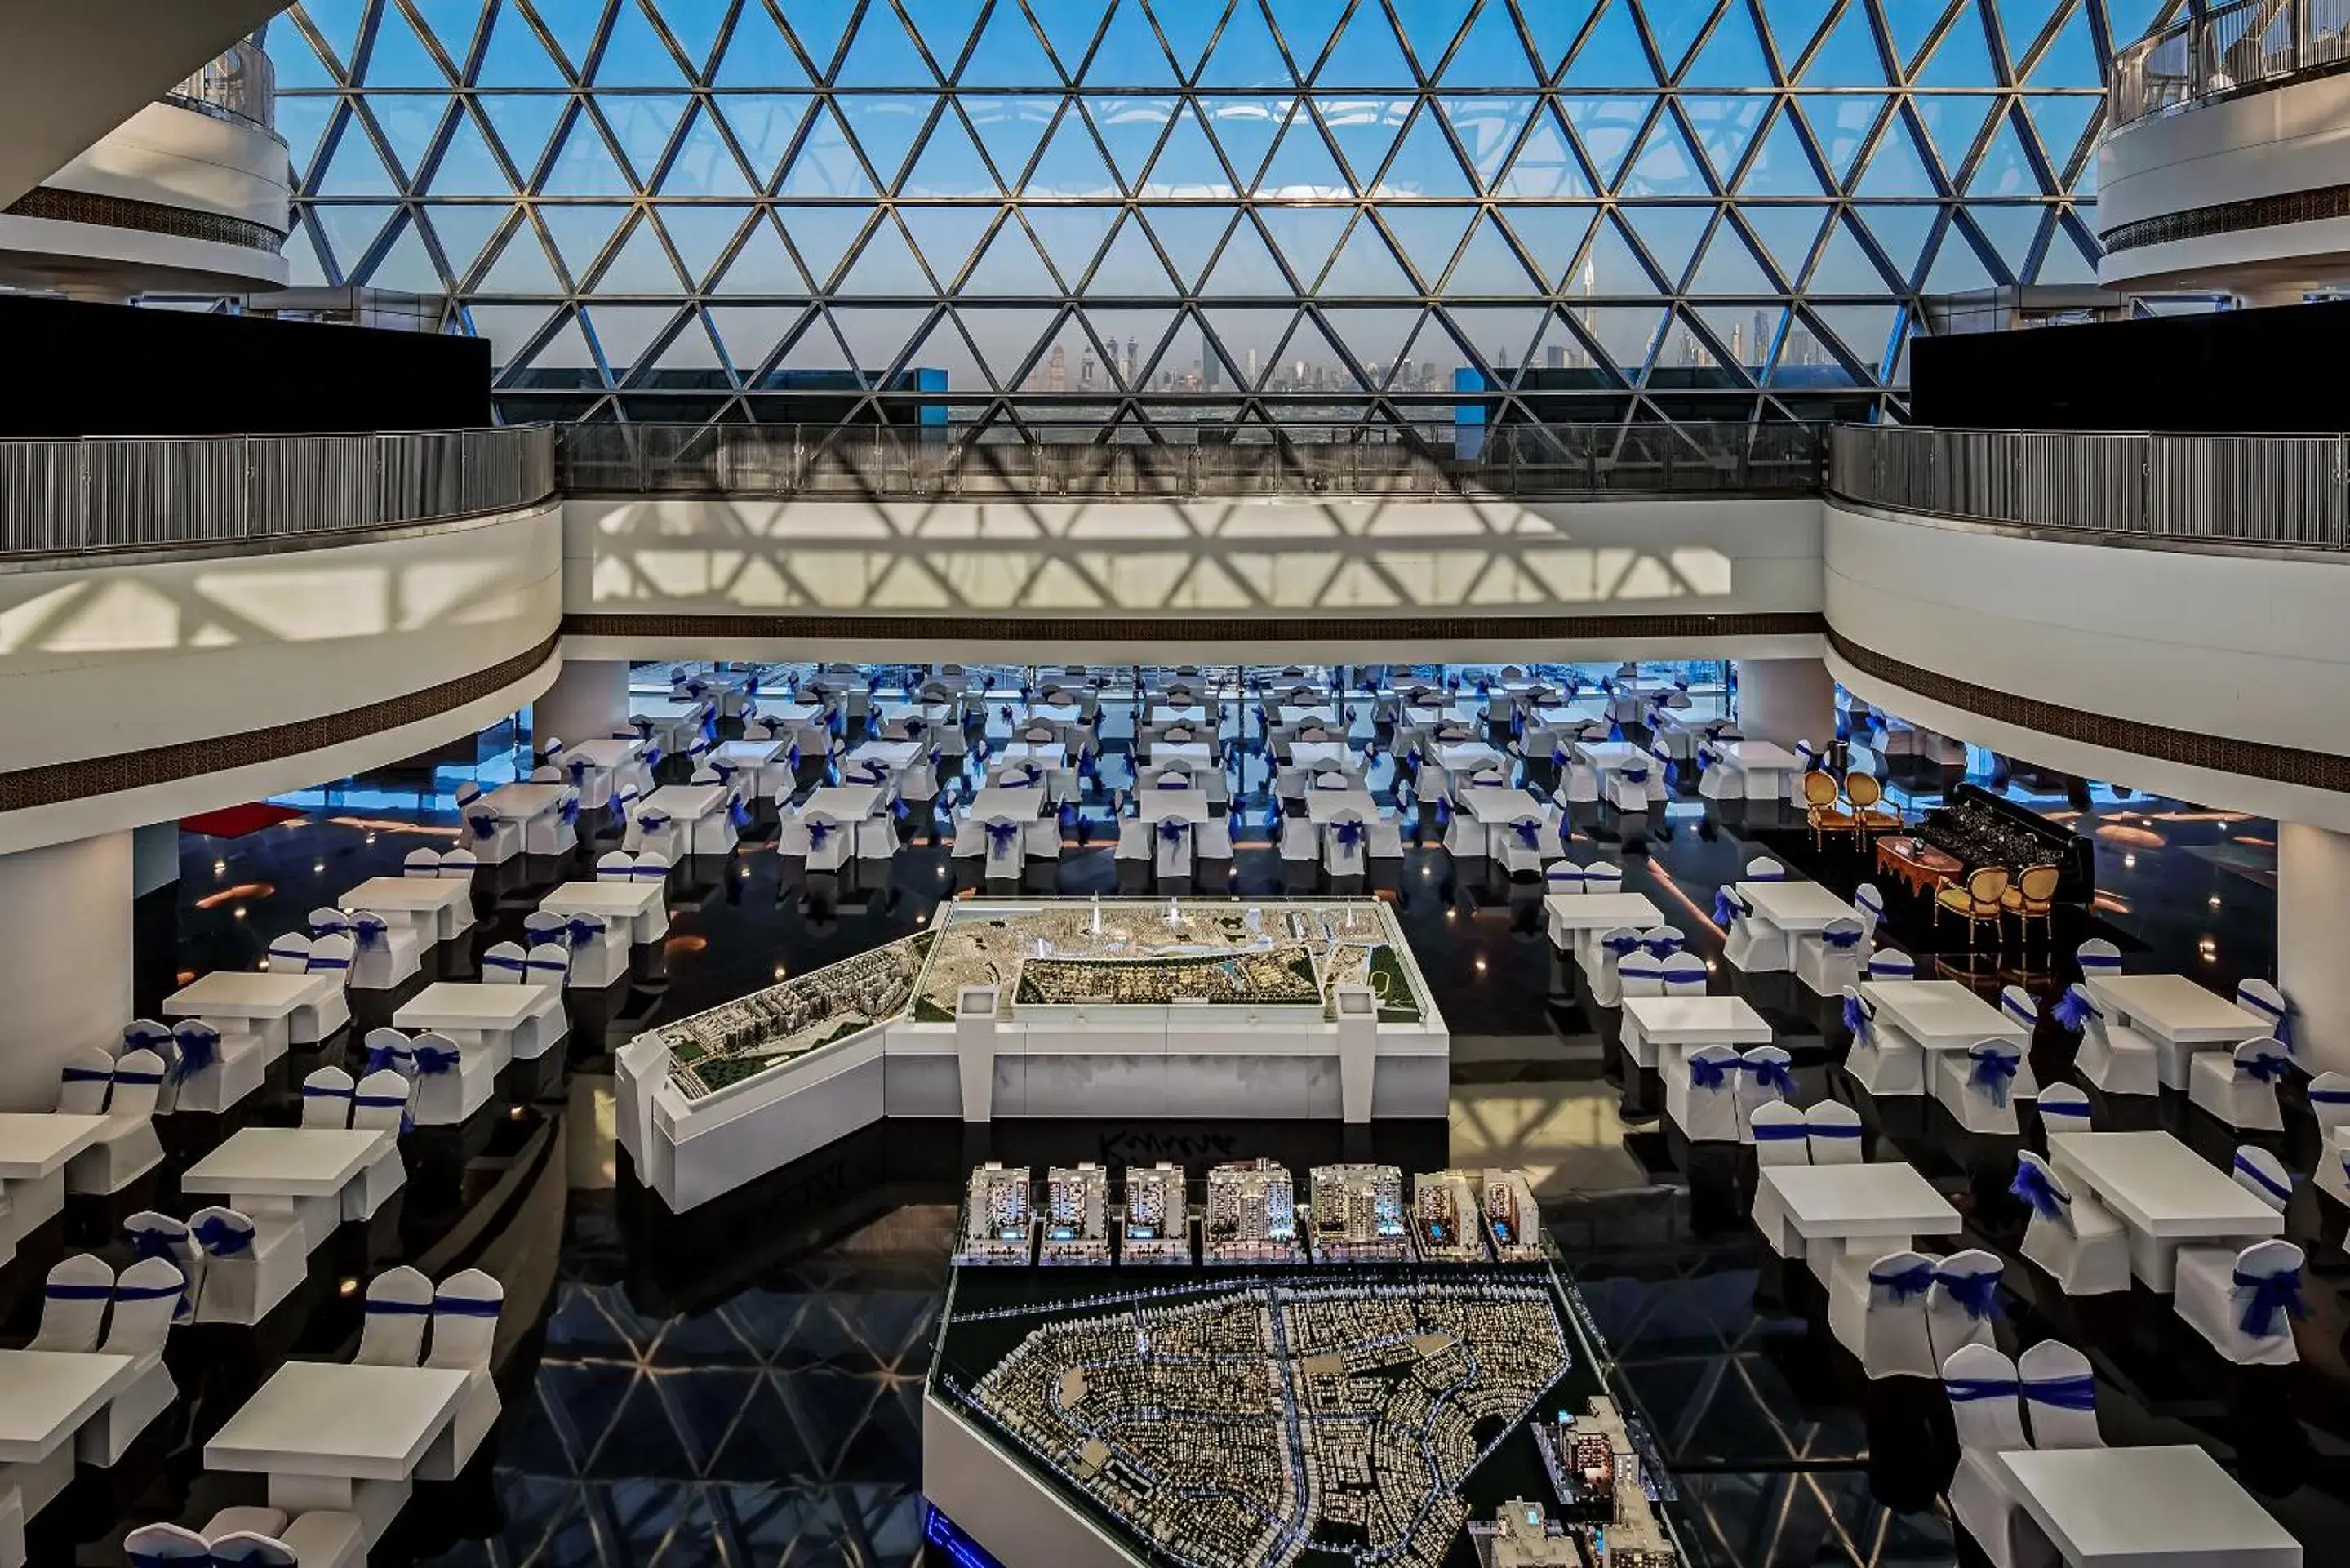 Banquet/Function facilities, Banquet Facilities in The Meydan Hotel